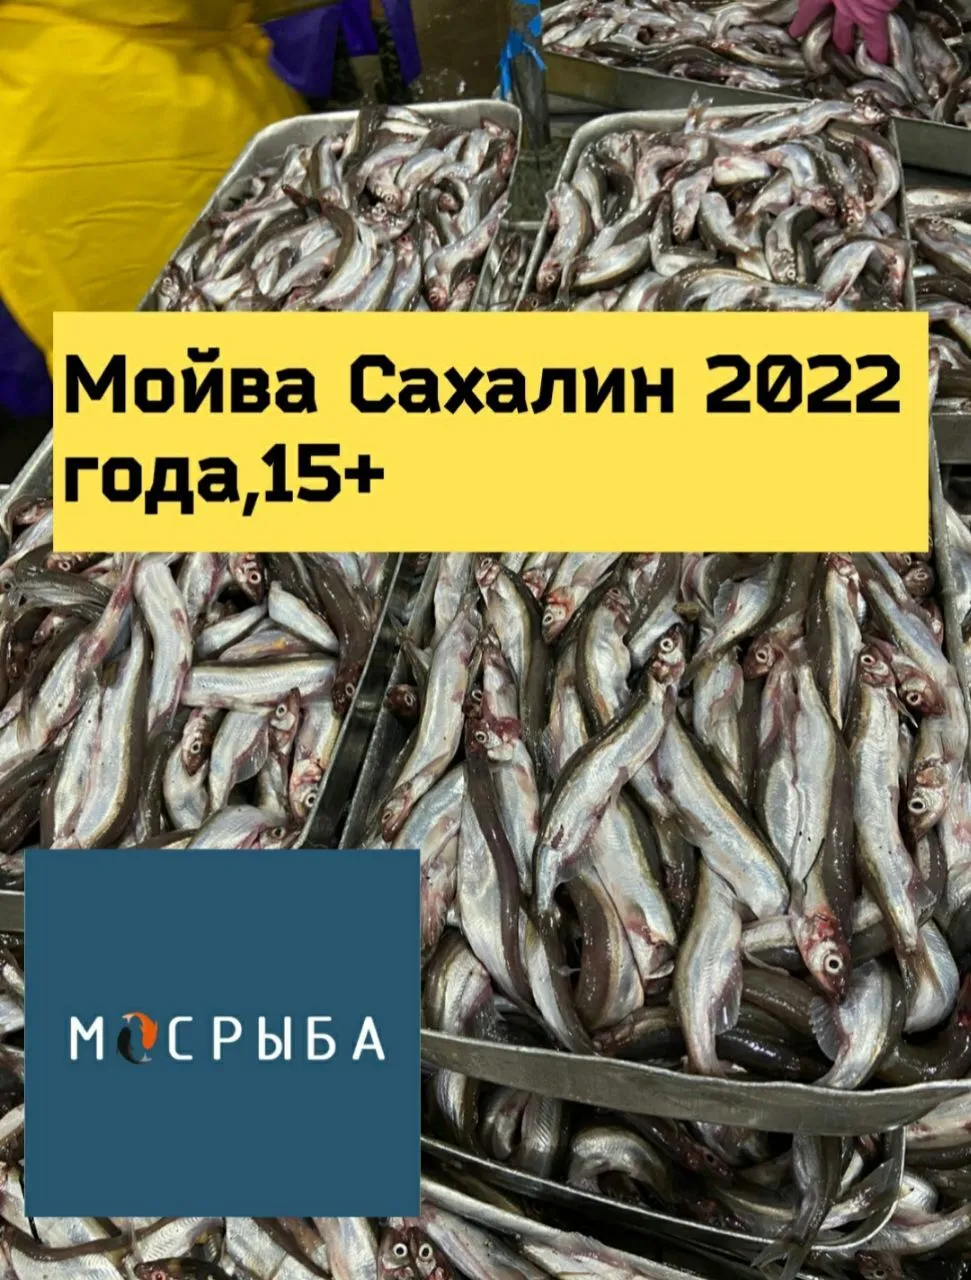 фотография продукта Мойва Сахалин 2022 года от производителя